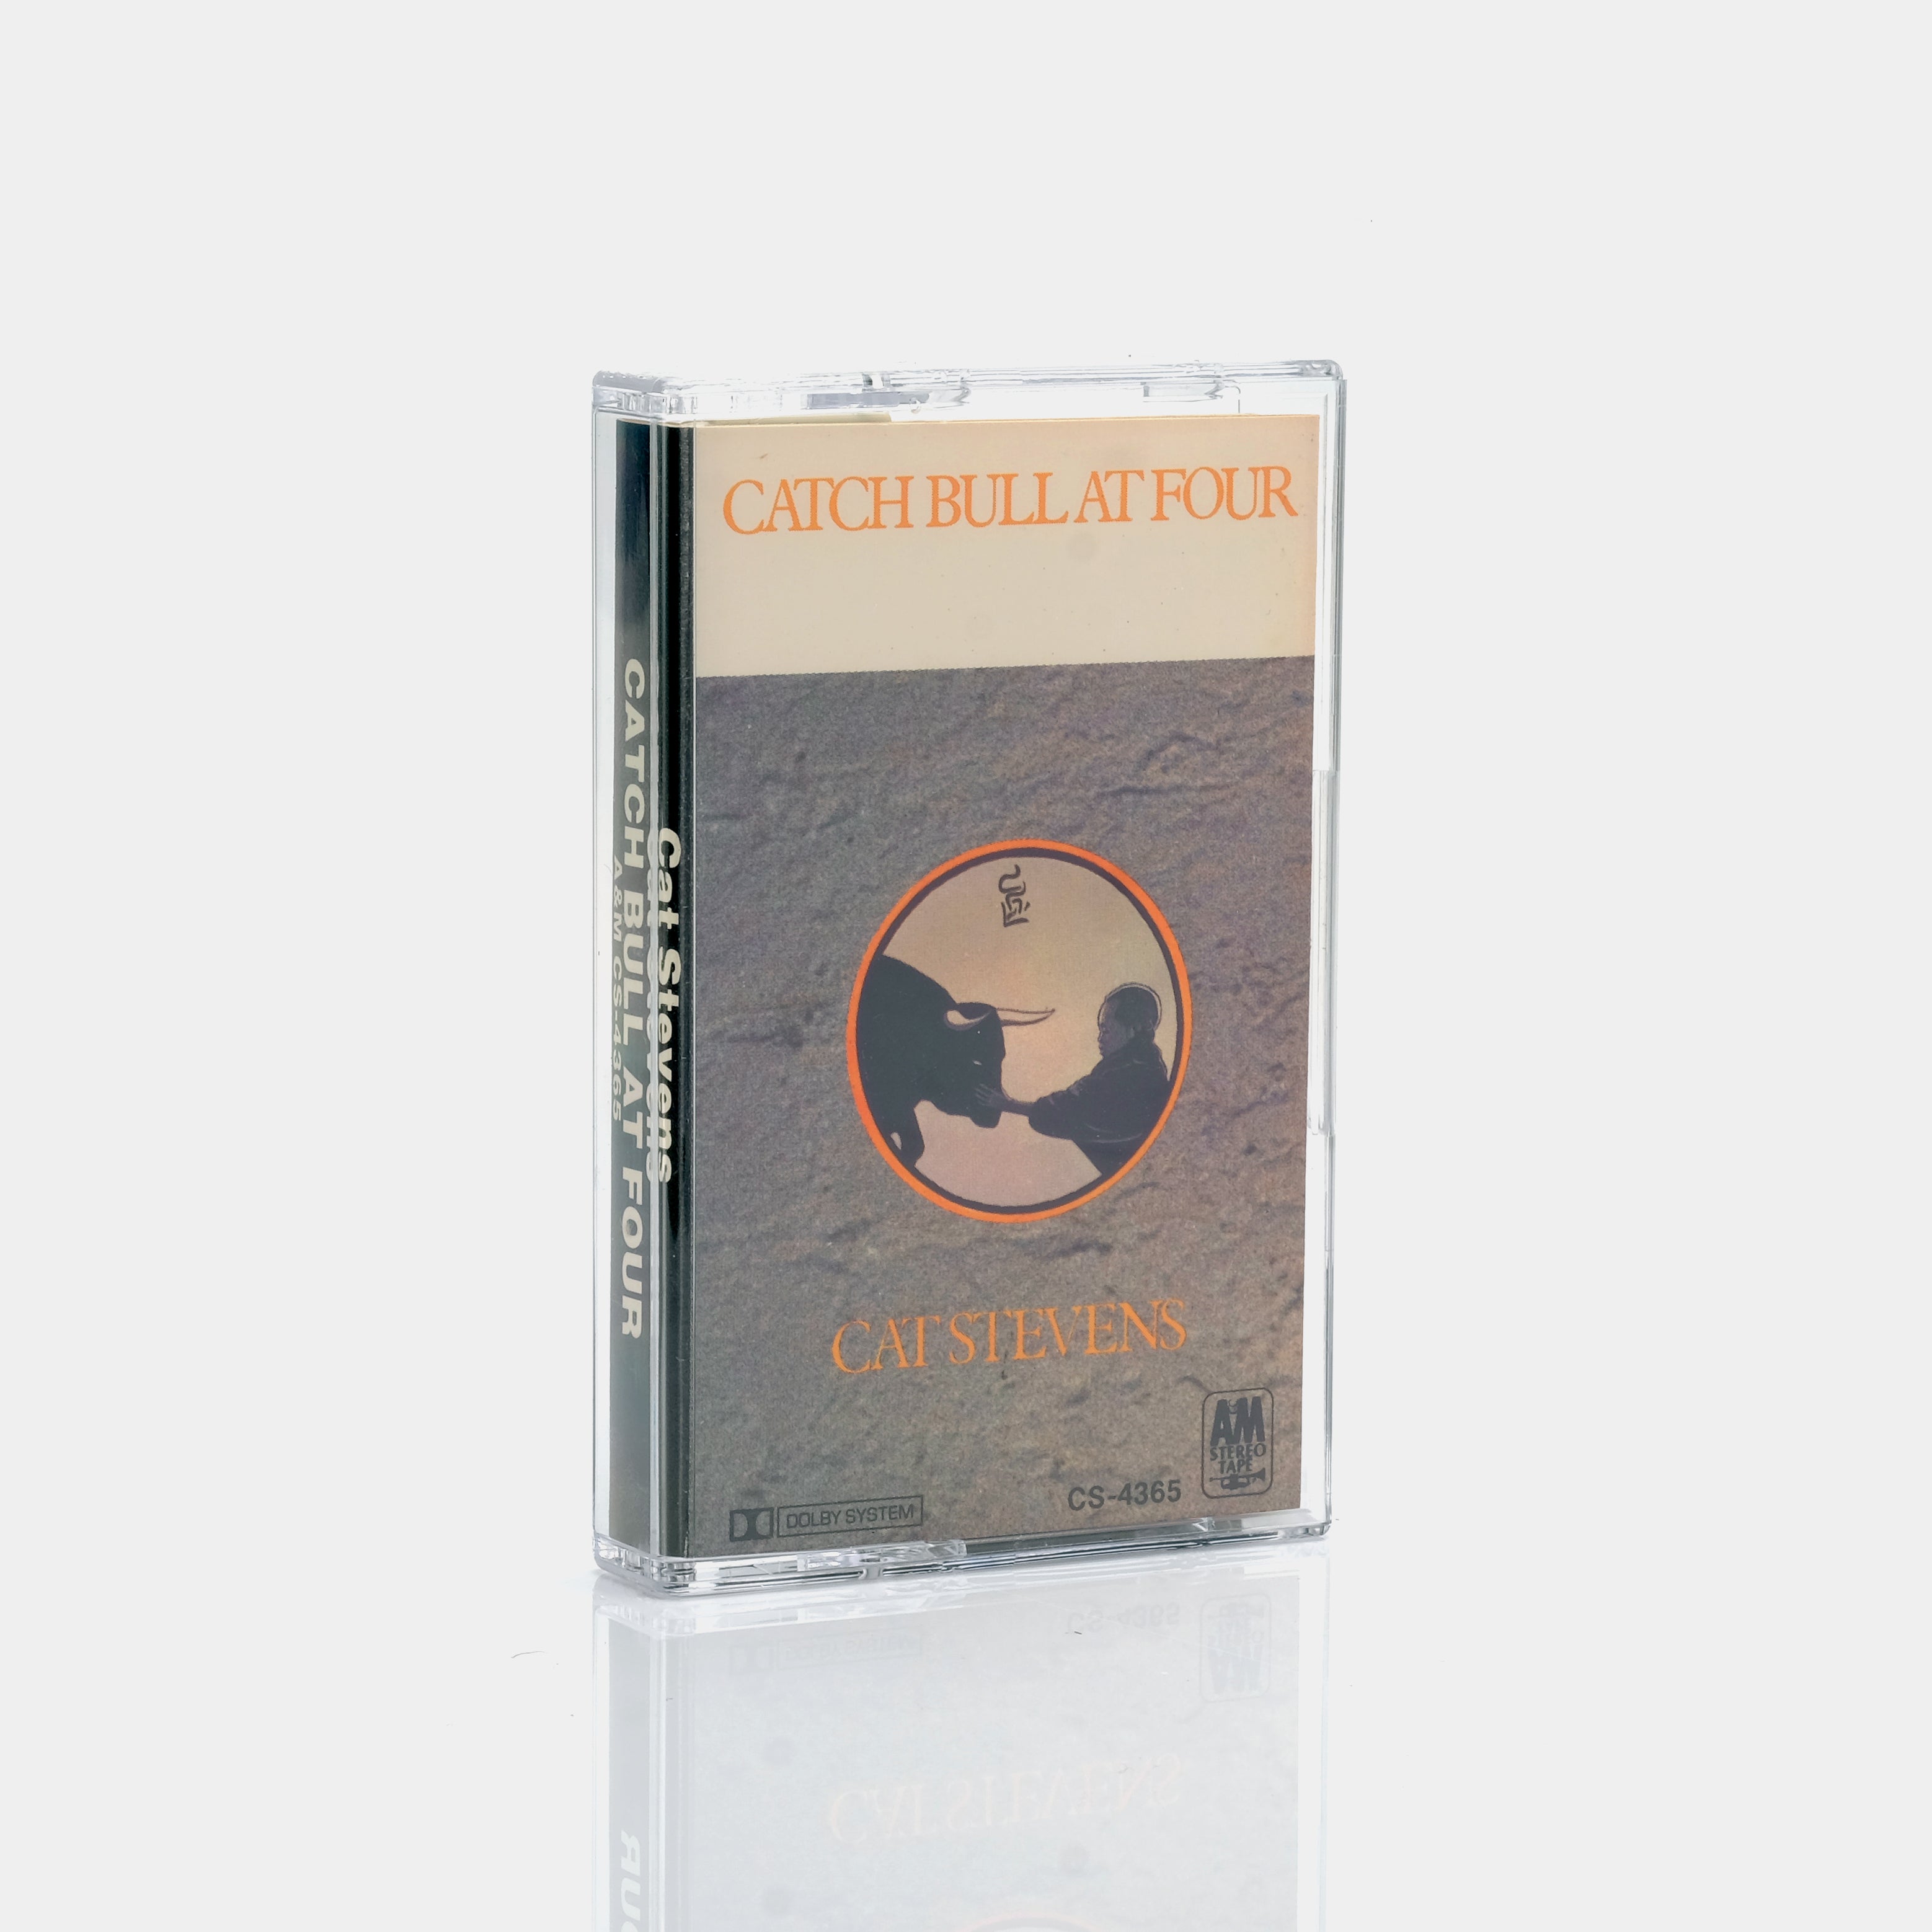 Cat Stevens - Catch Bull At Four (1972) Cassette Tape